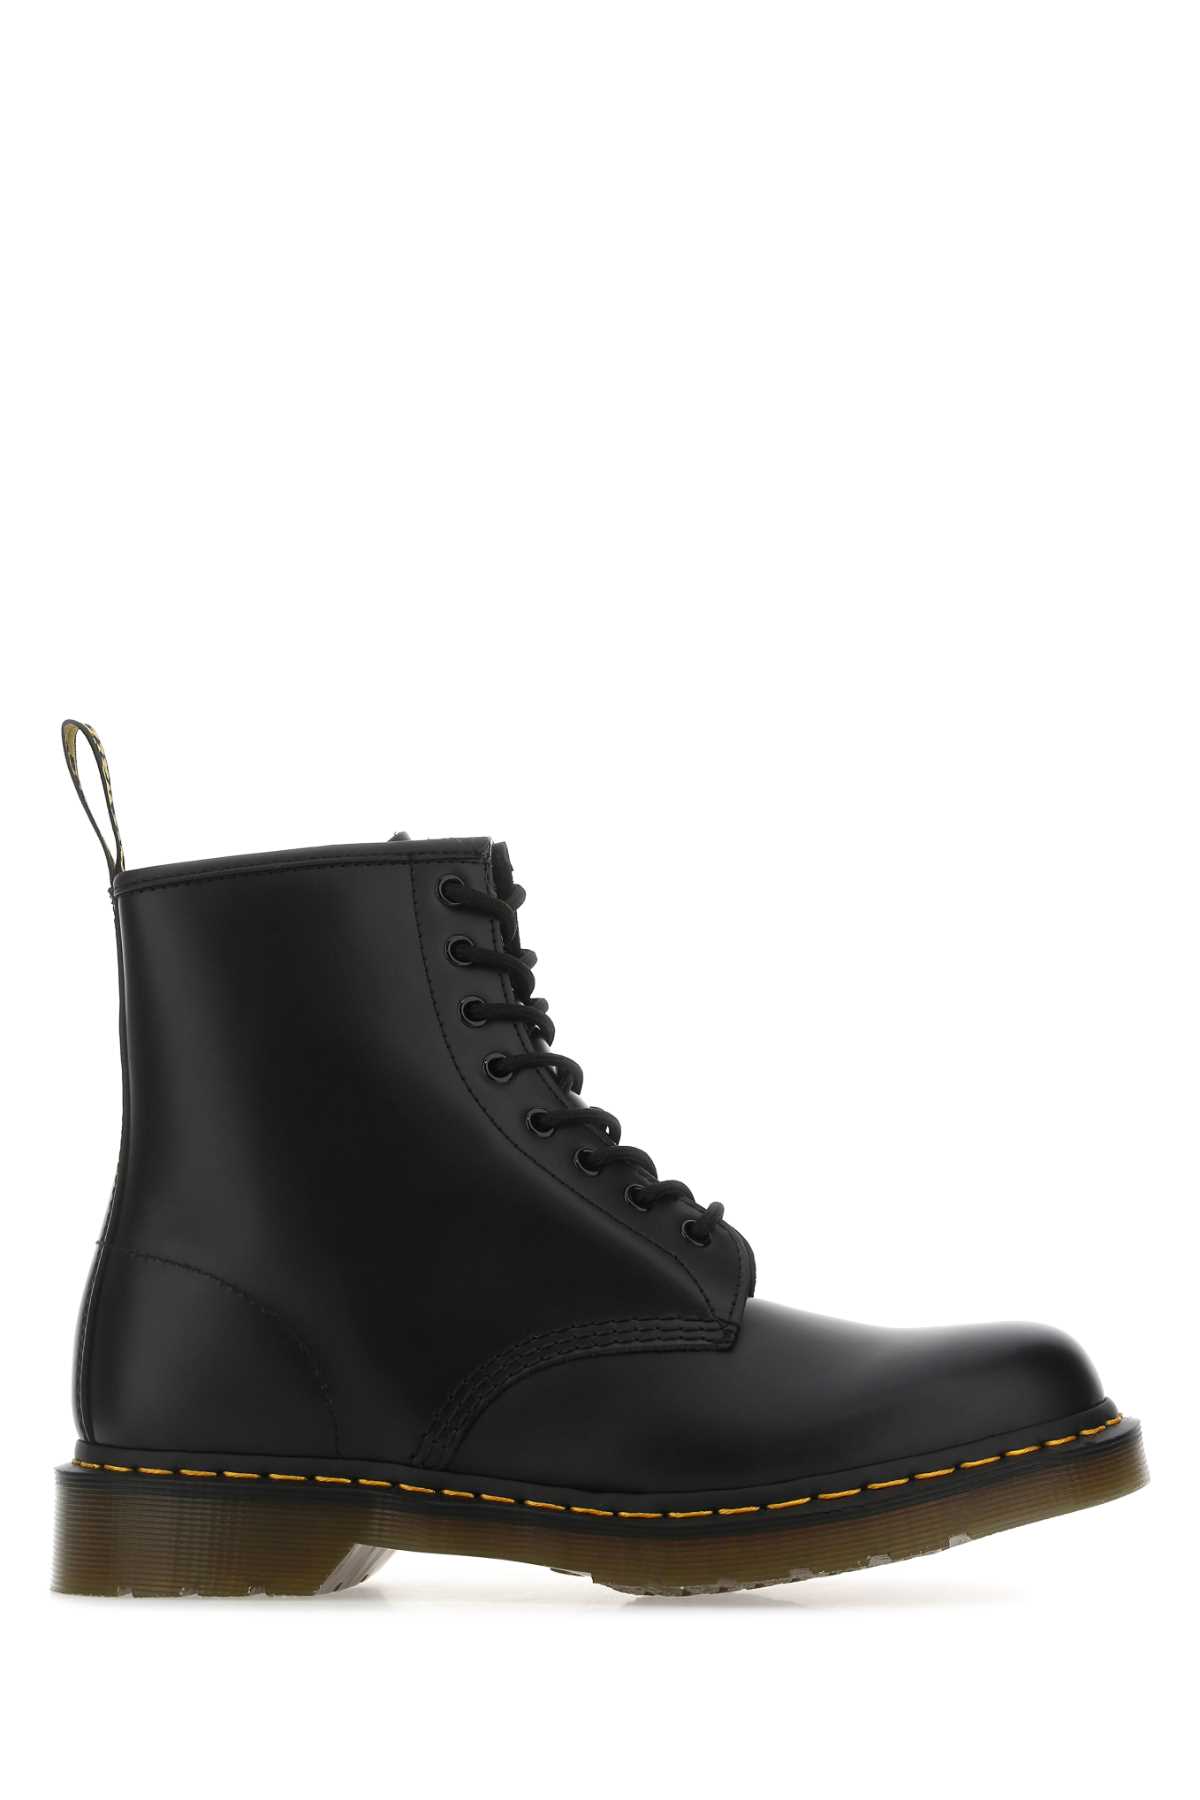 Shop Dr. Martens' Black Leather 1460 Ankle Boots In Blacksmooth